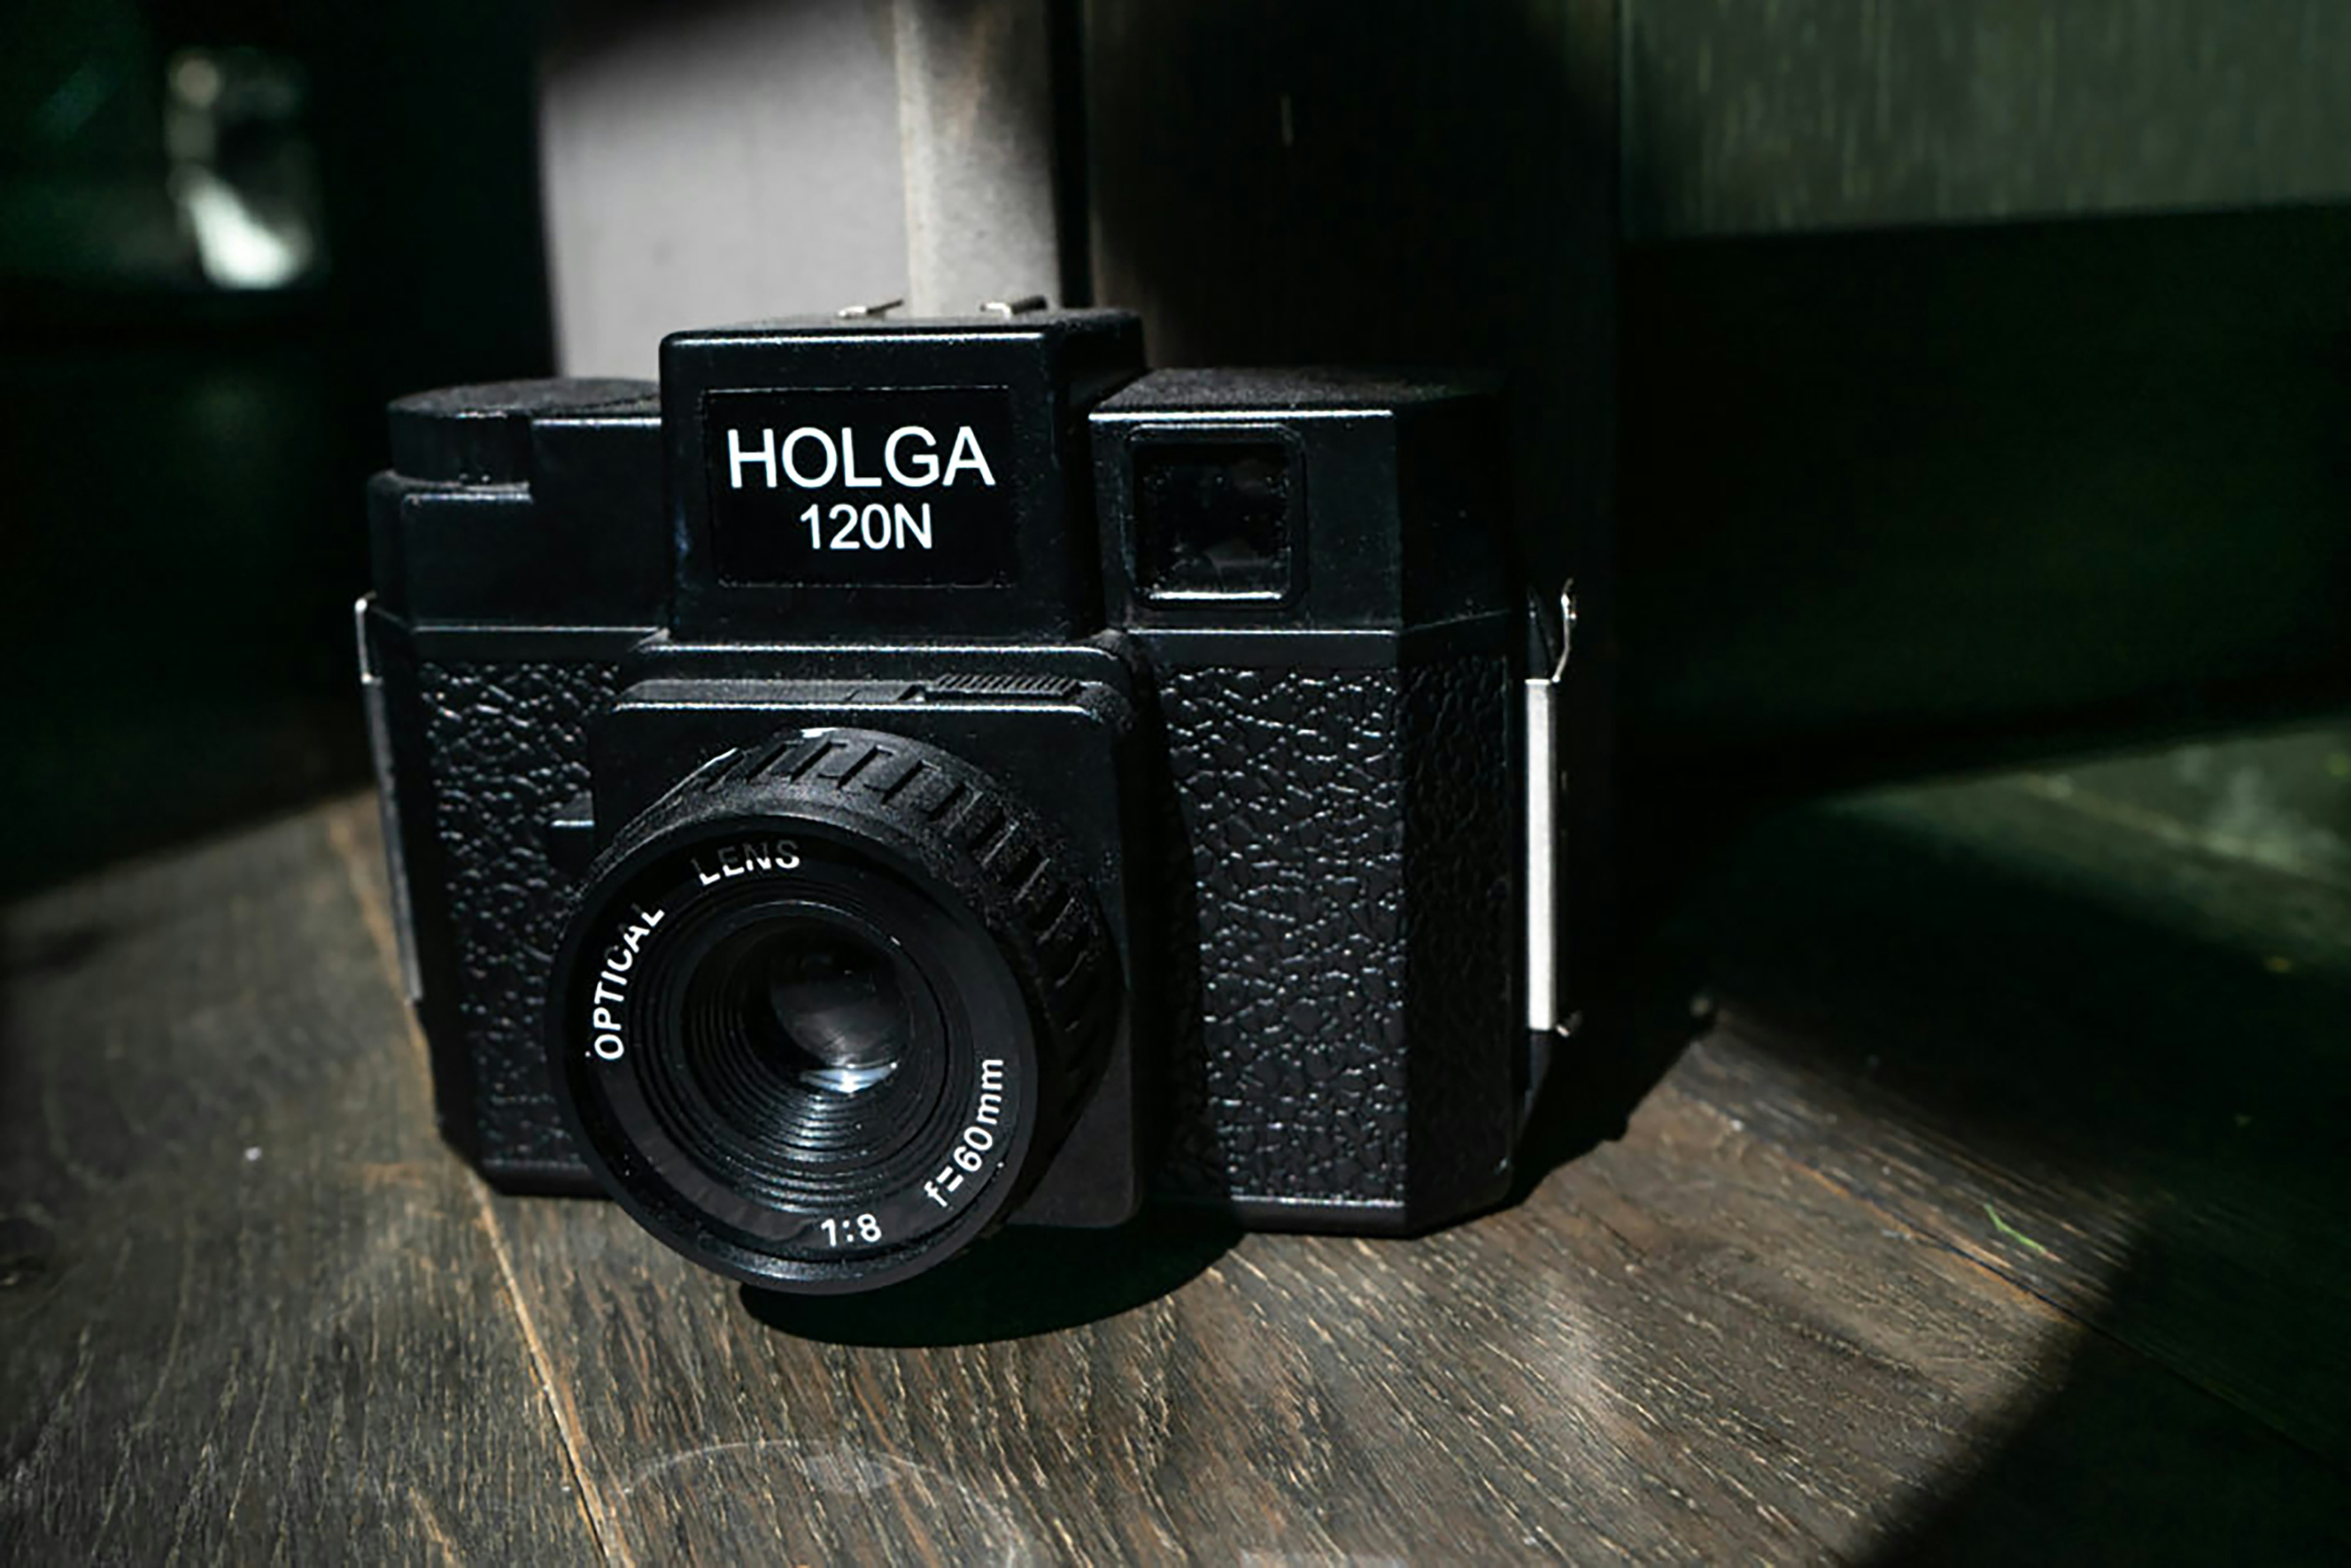 Holga 120N camera